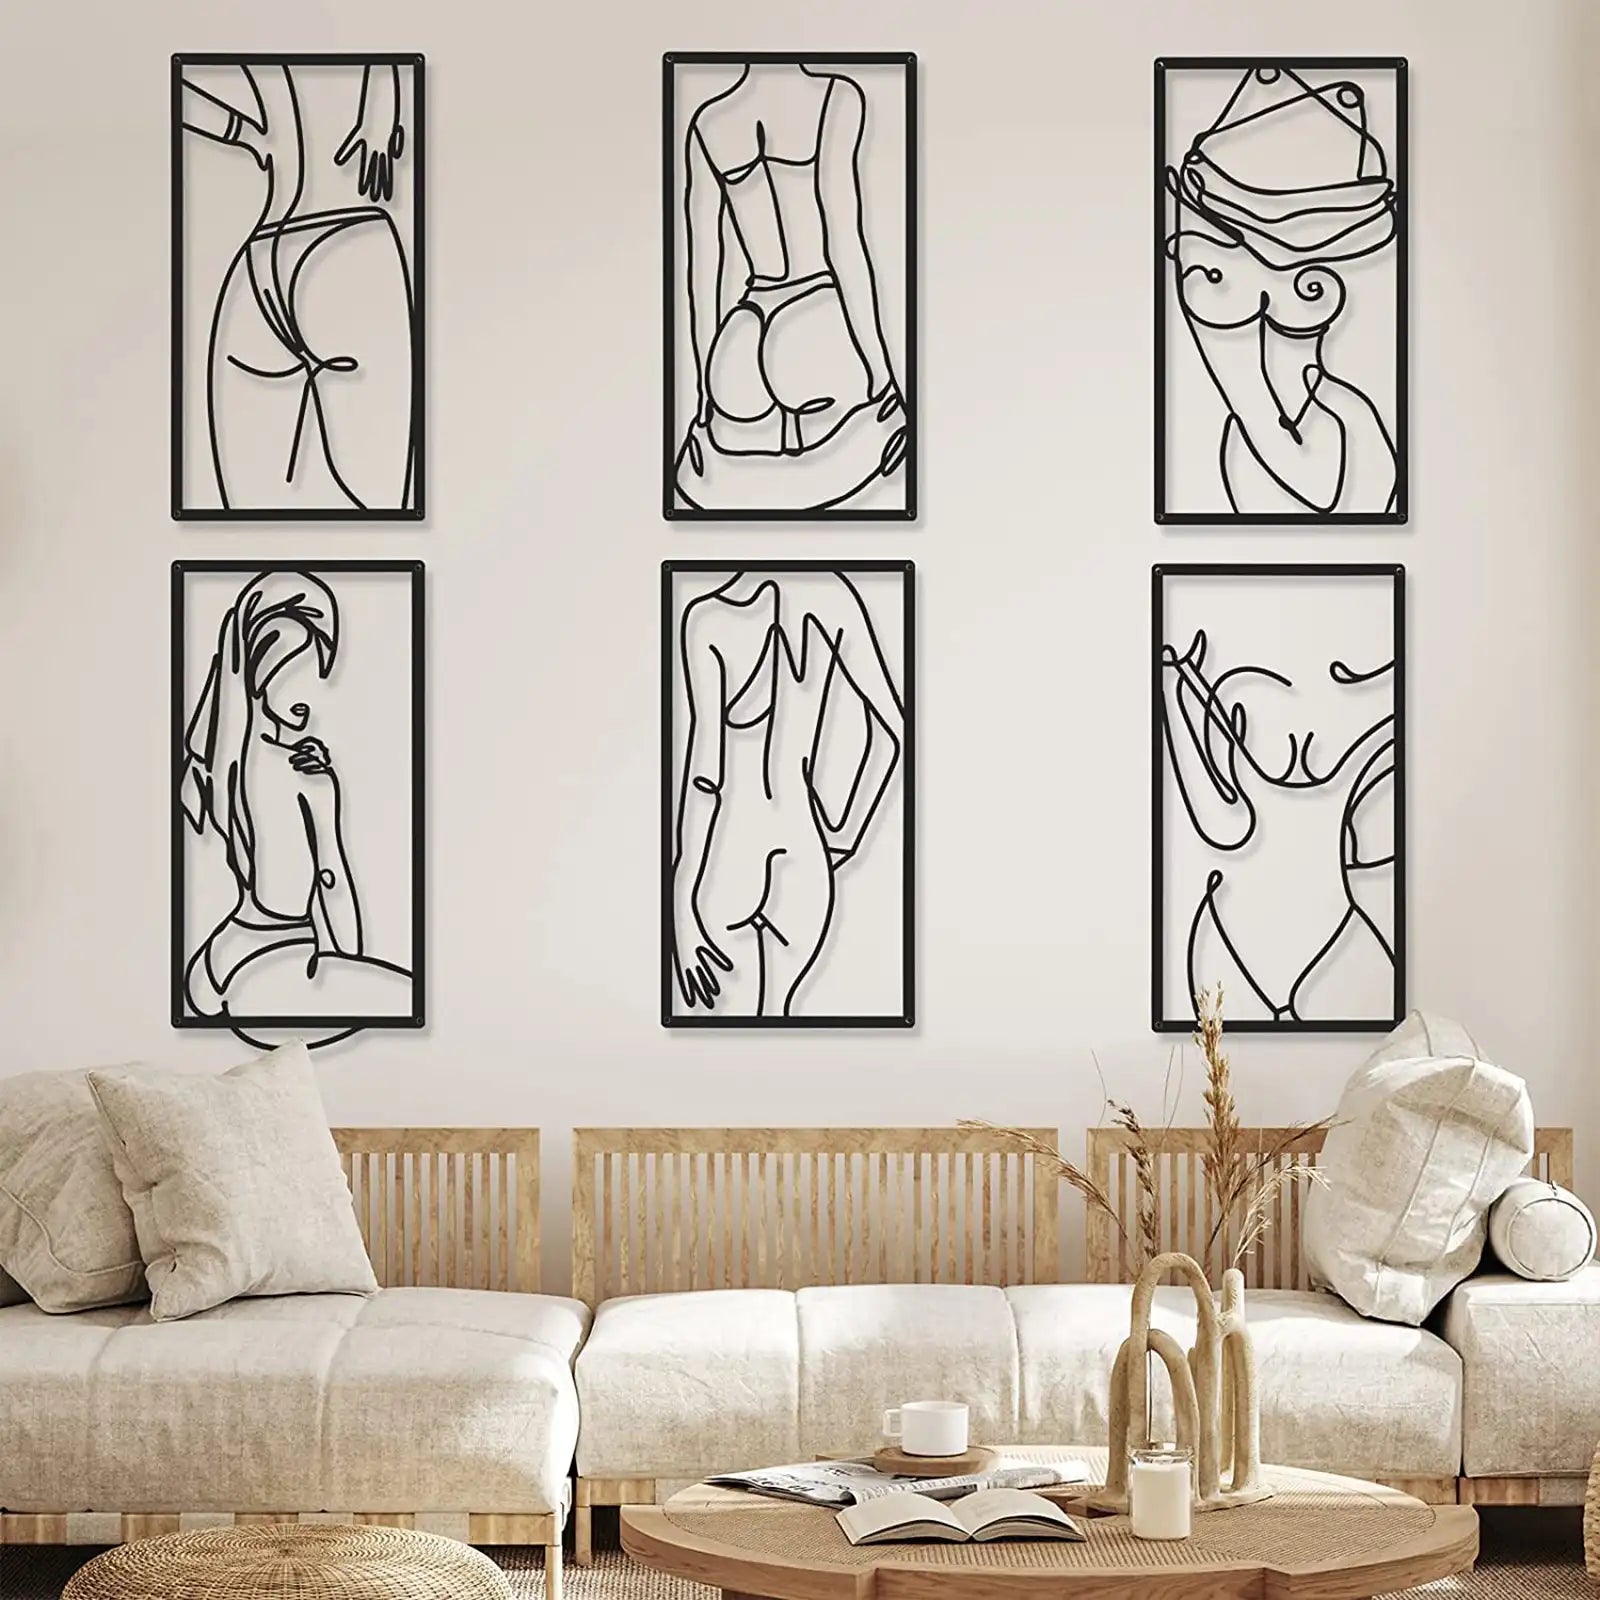 6 piezas moderna minimalista decoración de pared mujer abstracta arte de la pared dibujo de una sola línea moderna decoración del hogar línea de metal decoración de la pared mujeres forma del cuerpo esculturas de pared para dormitorio baño sala de estar 